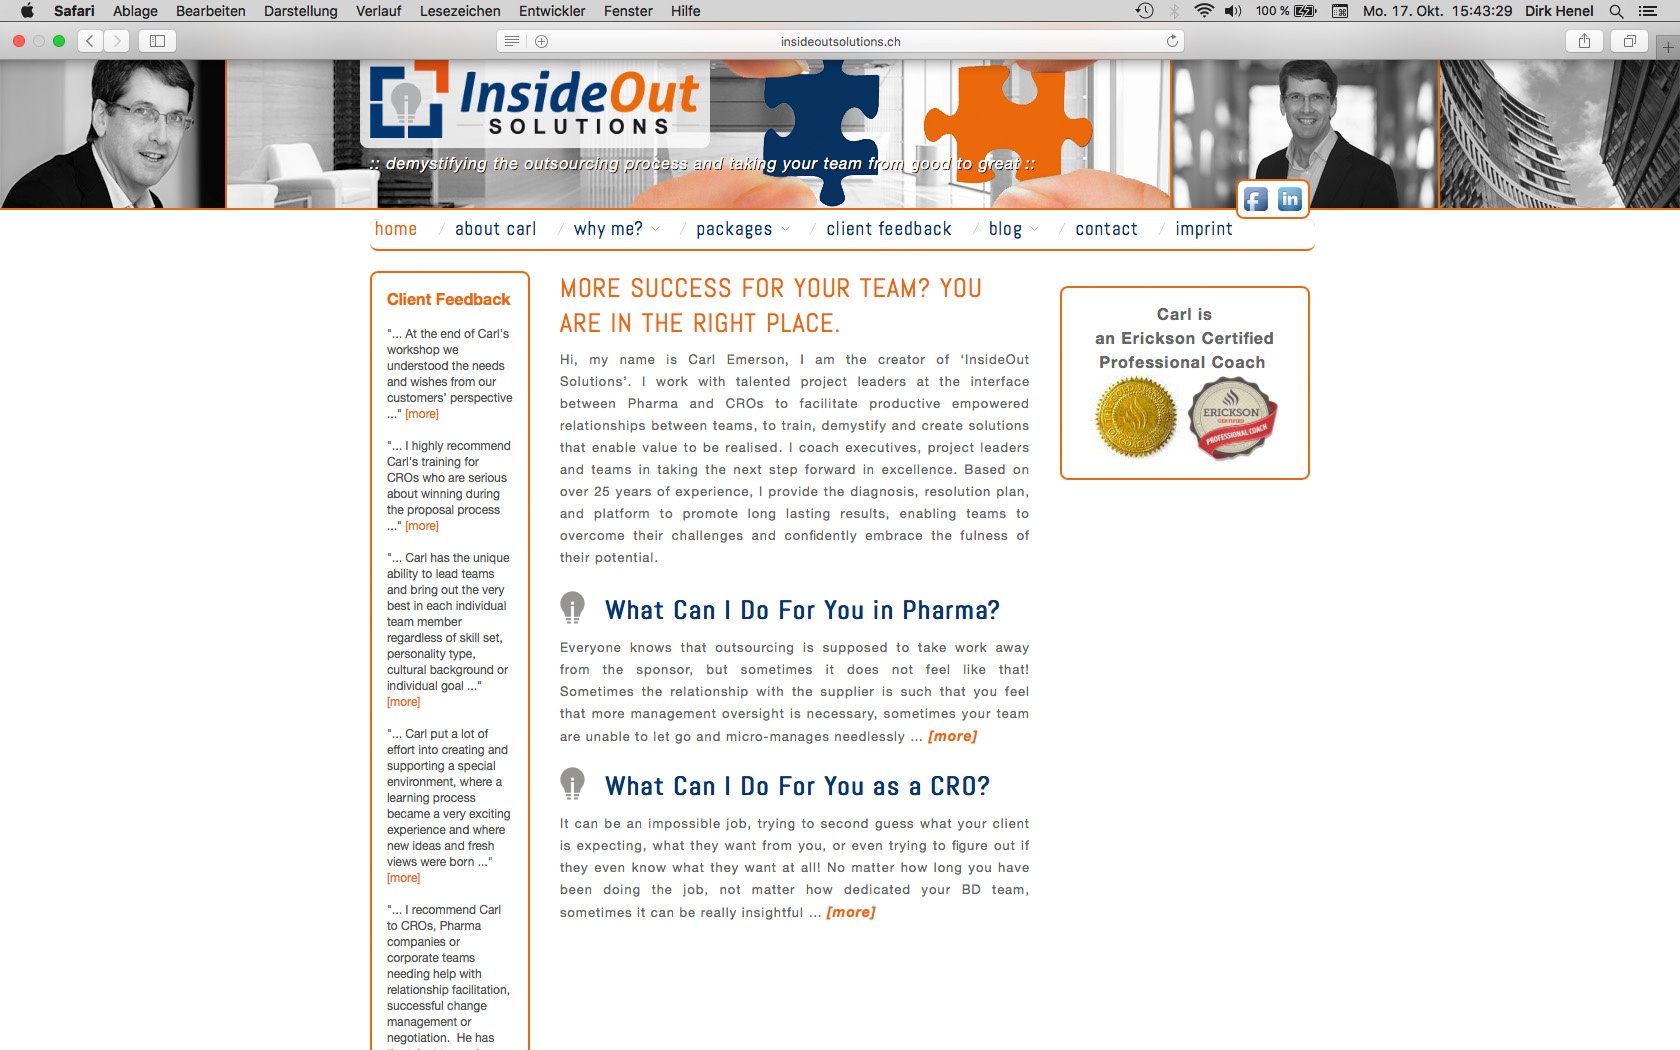 dh+ | Website InsideOut Solutions Basel, Schweiz